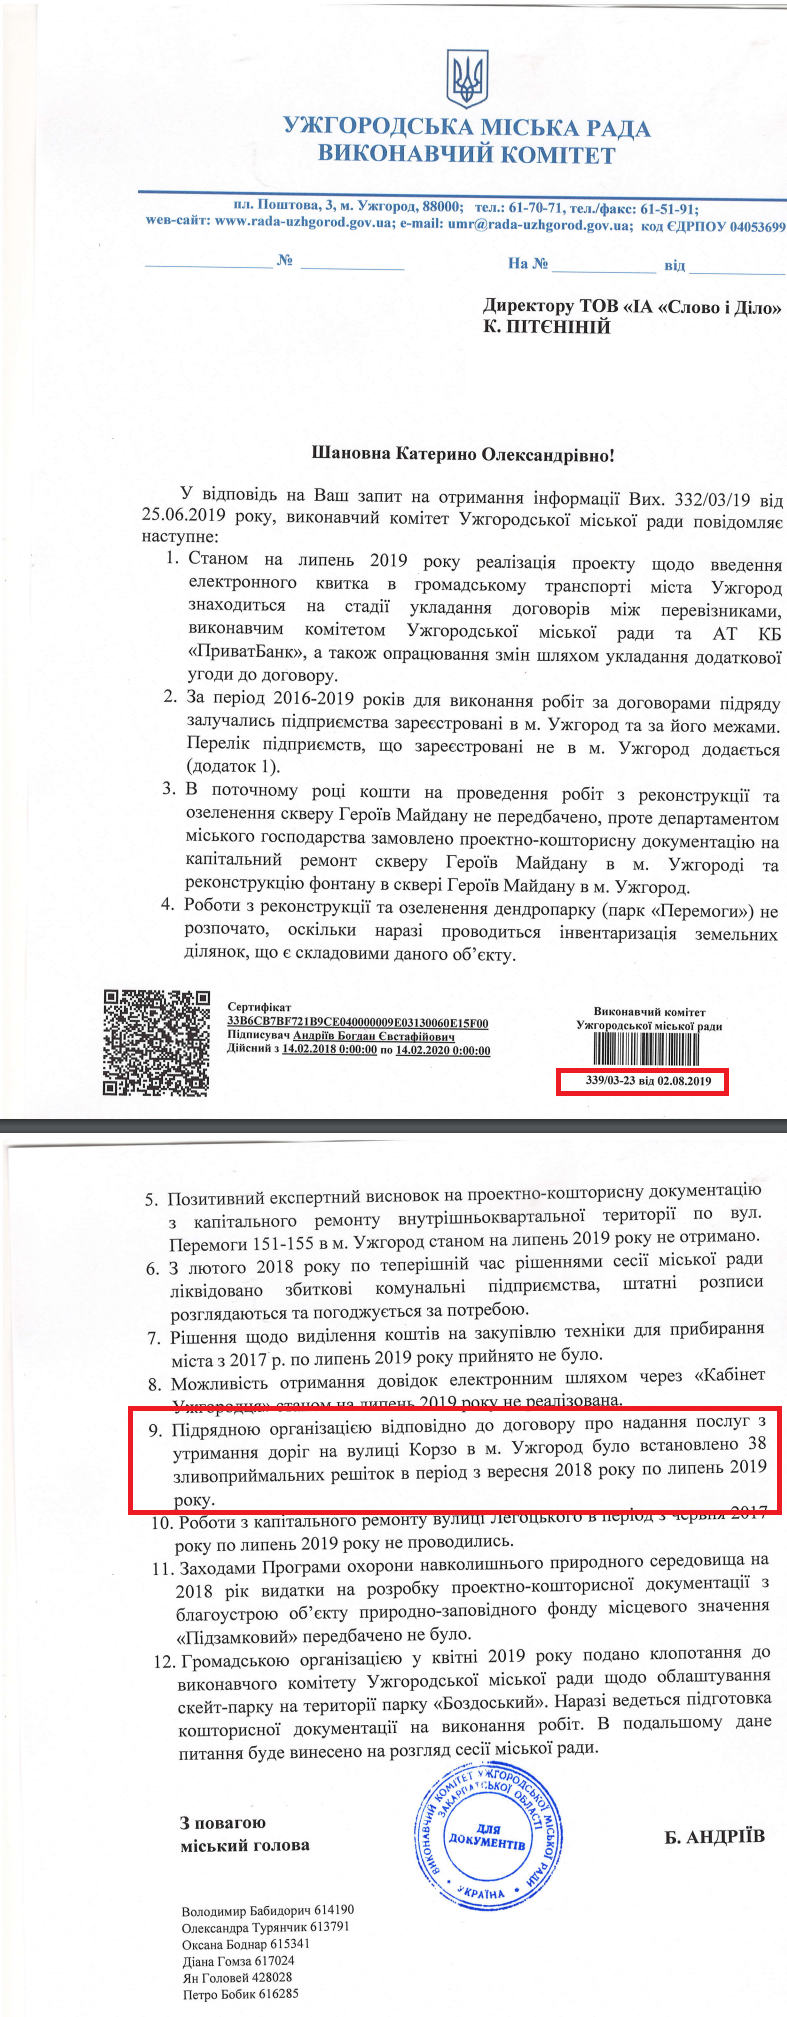 Лист Ужгородської МР від 02.08.2019 року